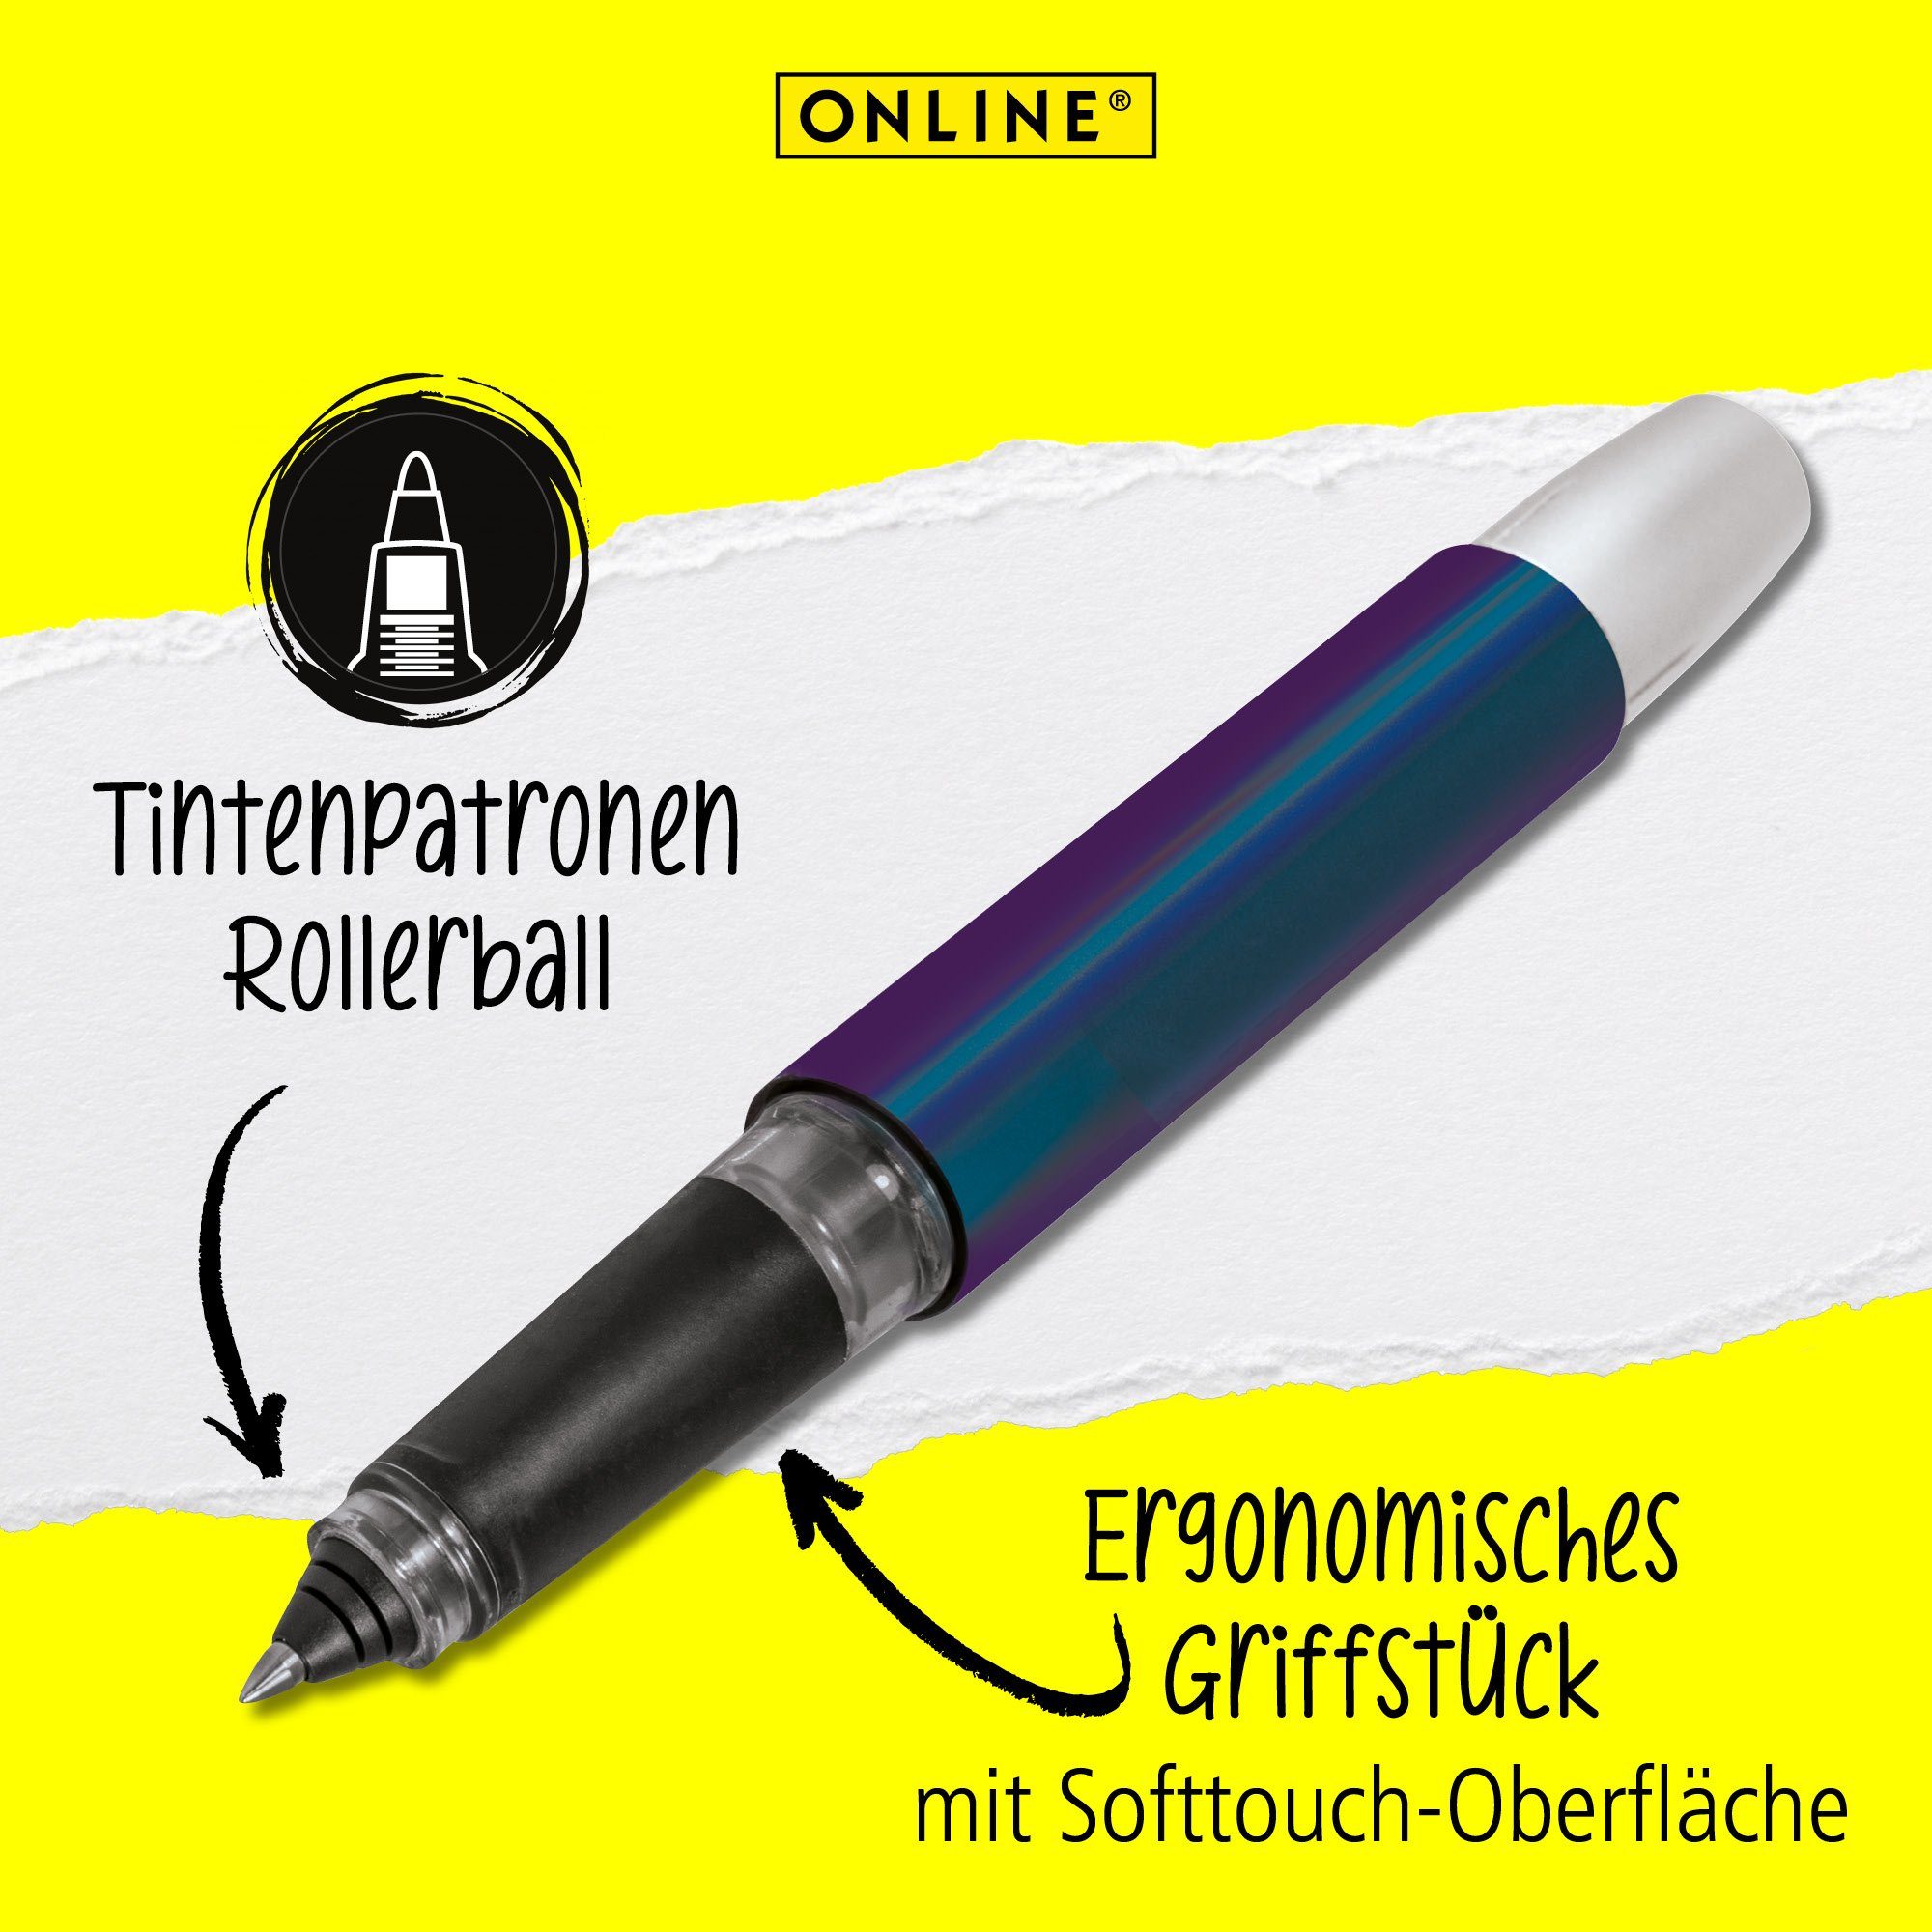 Campus Deutschland Pen in ideal die Tintenroller Miracle hergestellt Rollerball, für Schule, ergonomisch, Online